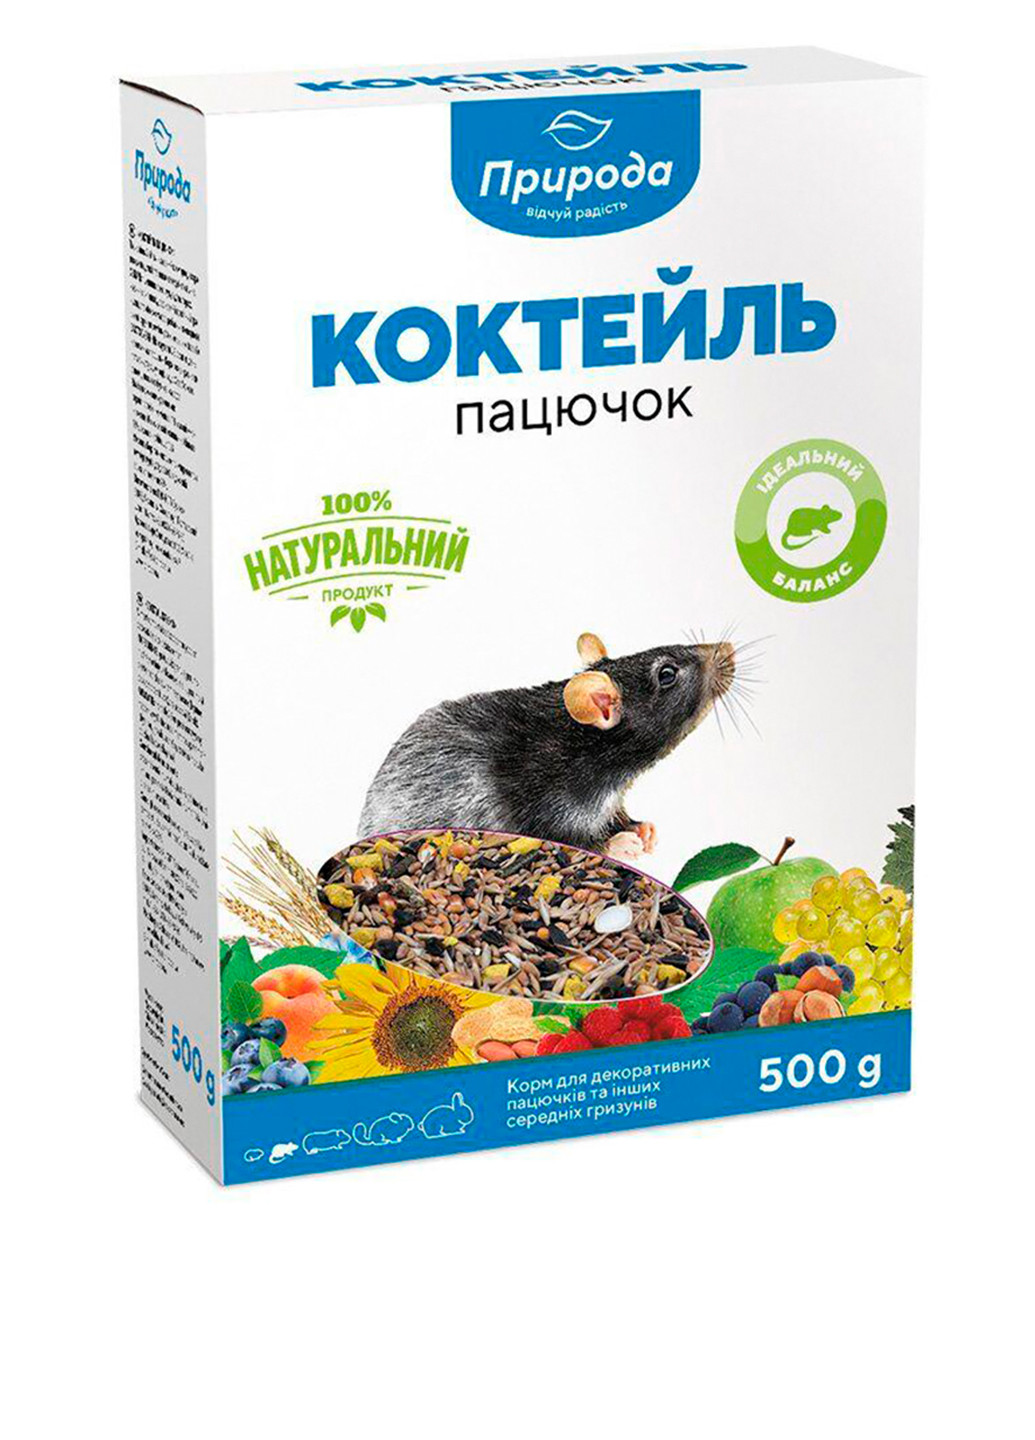 Сухой корм Коктейль Крыска, 500 г Природа (251150025)